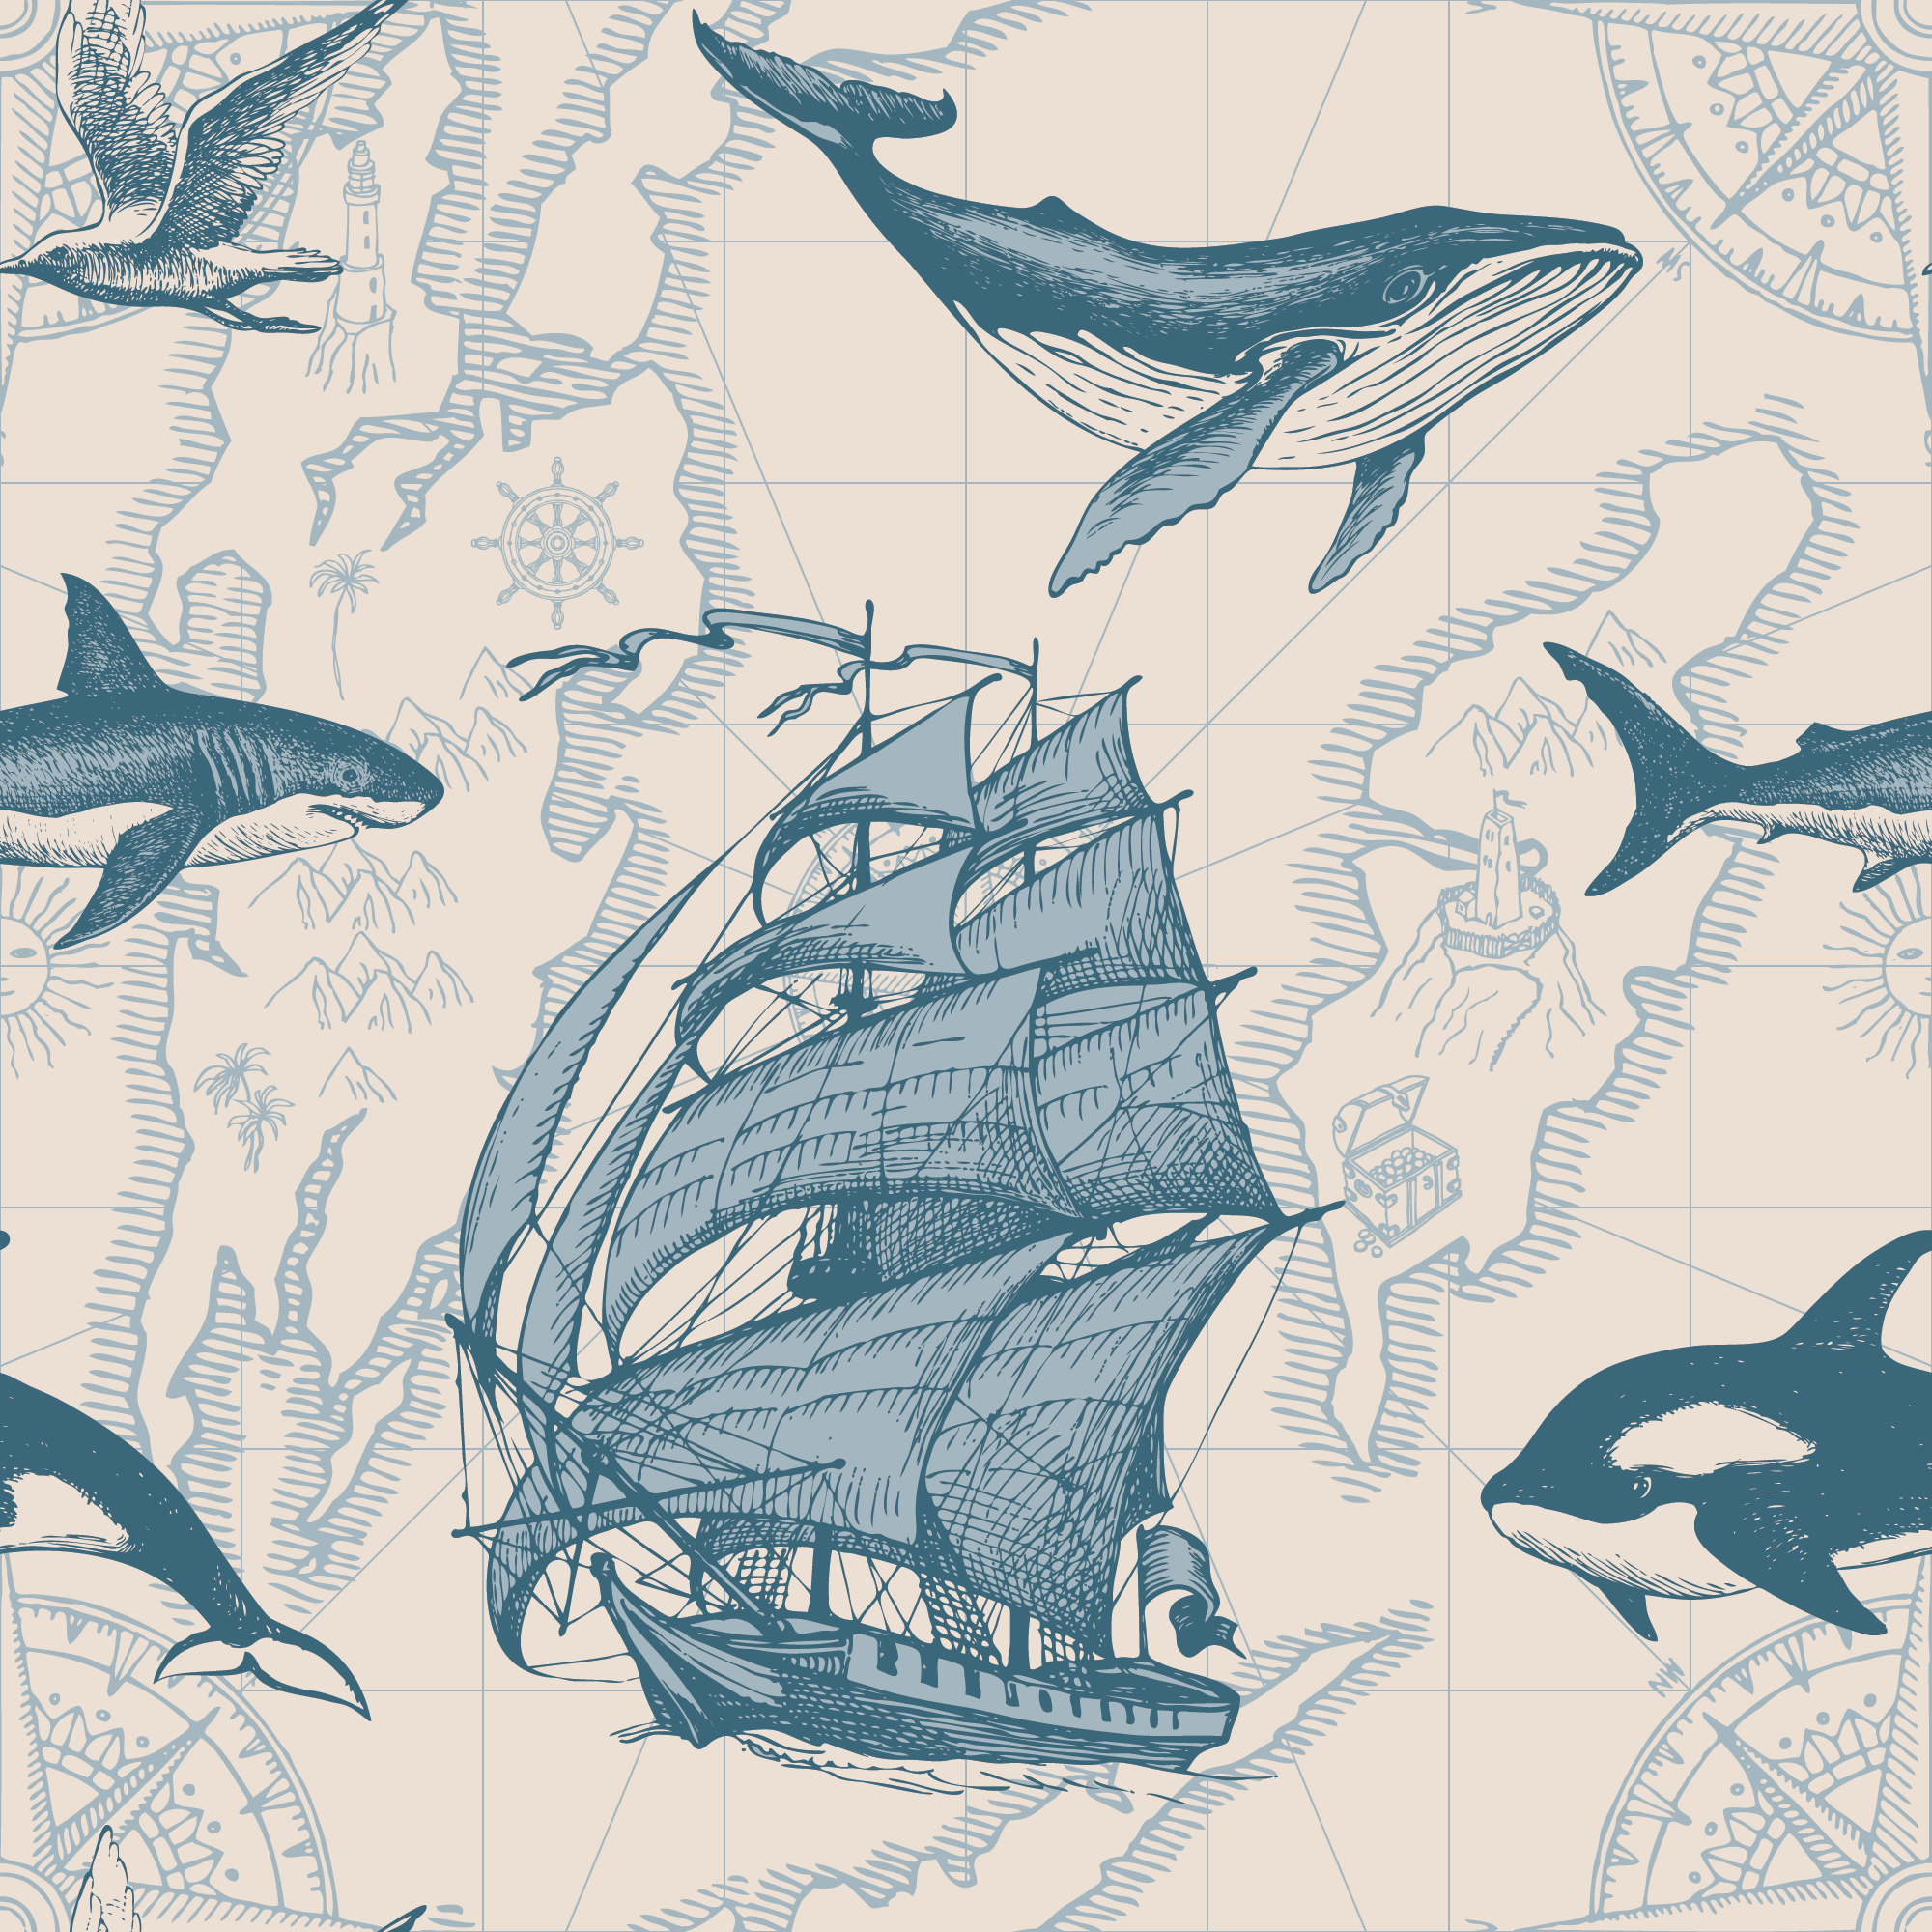 Nautical_Odyssey_Map_Wallpaper_Mural_Artwork